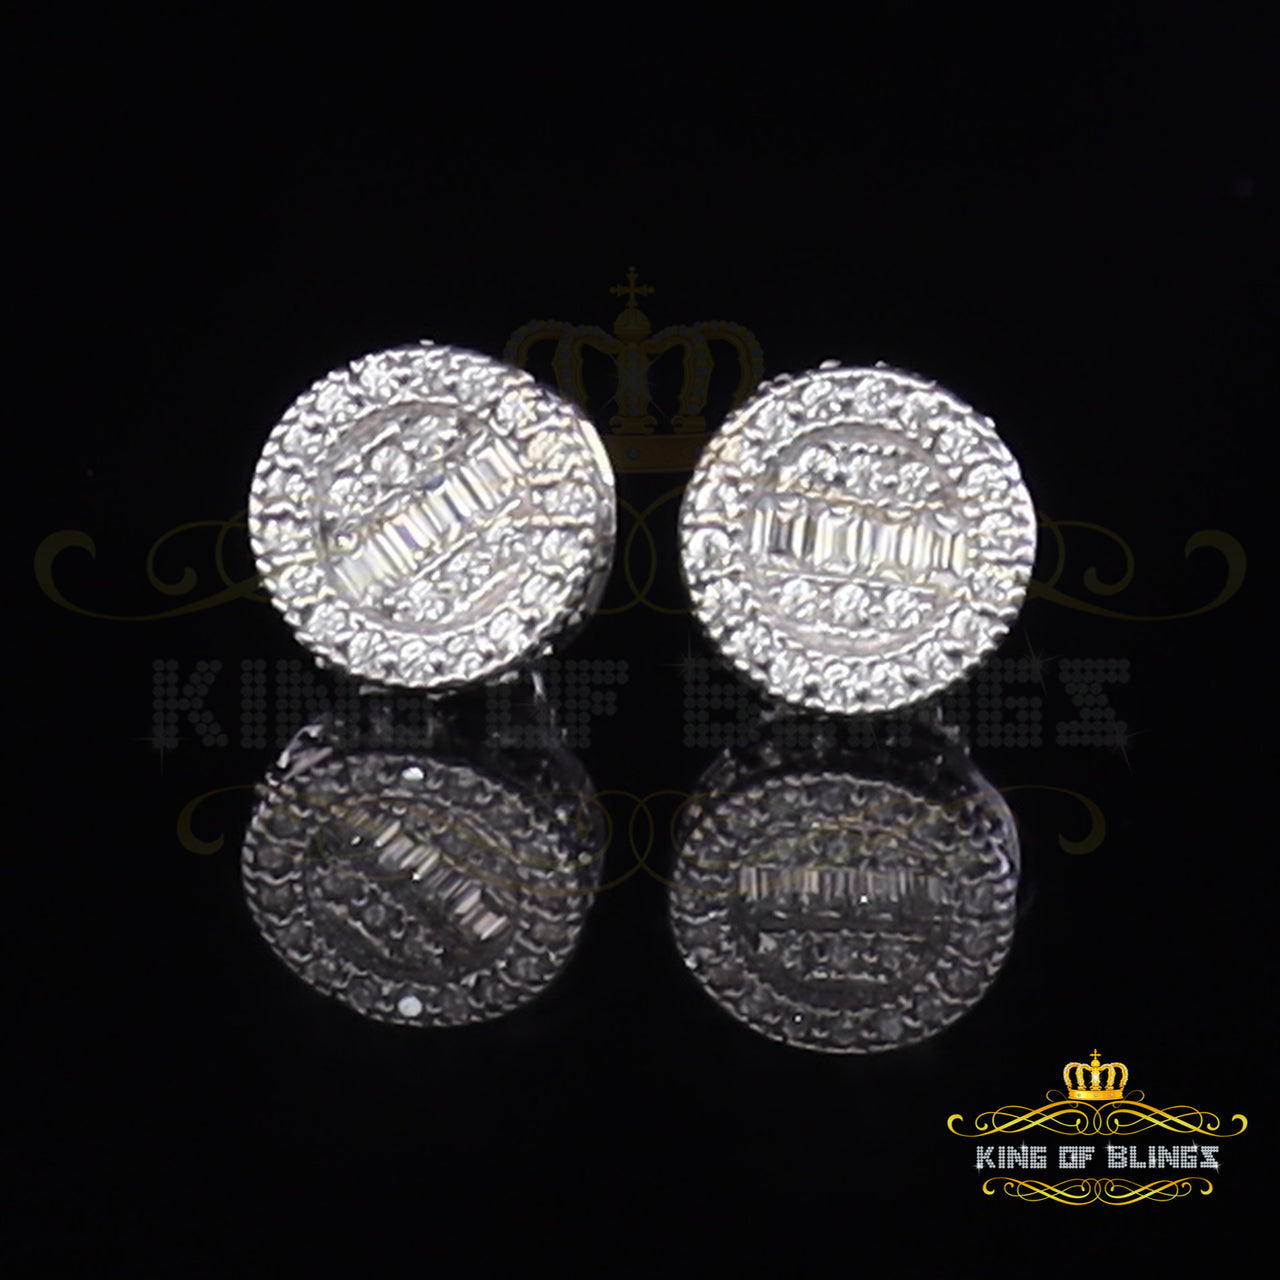 King of Bling's 1.00ct VVS 'D' Moissanite Men's/Womens Silver White Stud Baguette Earrings KING OF BLINGS